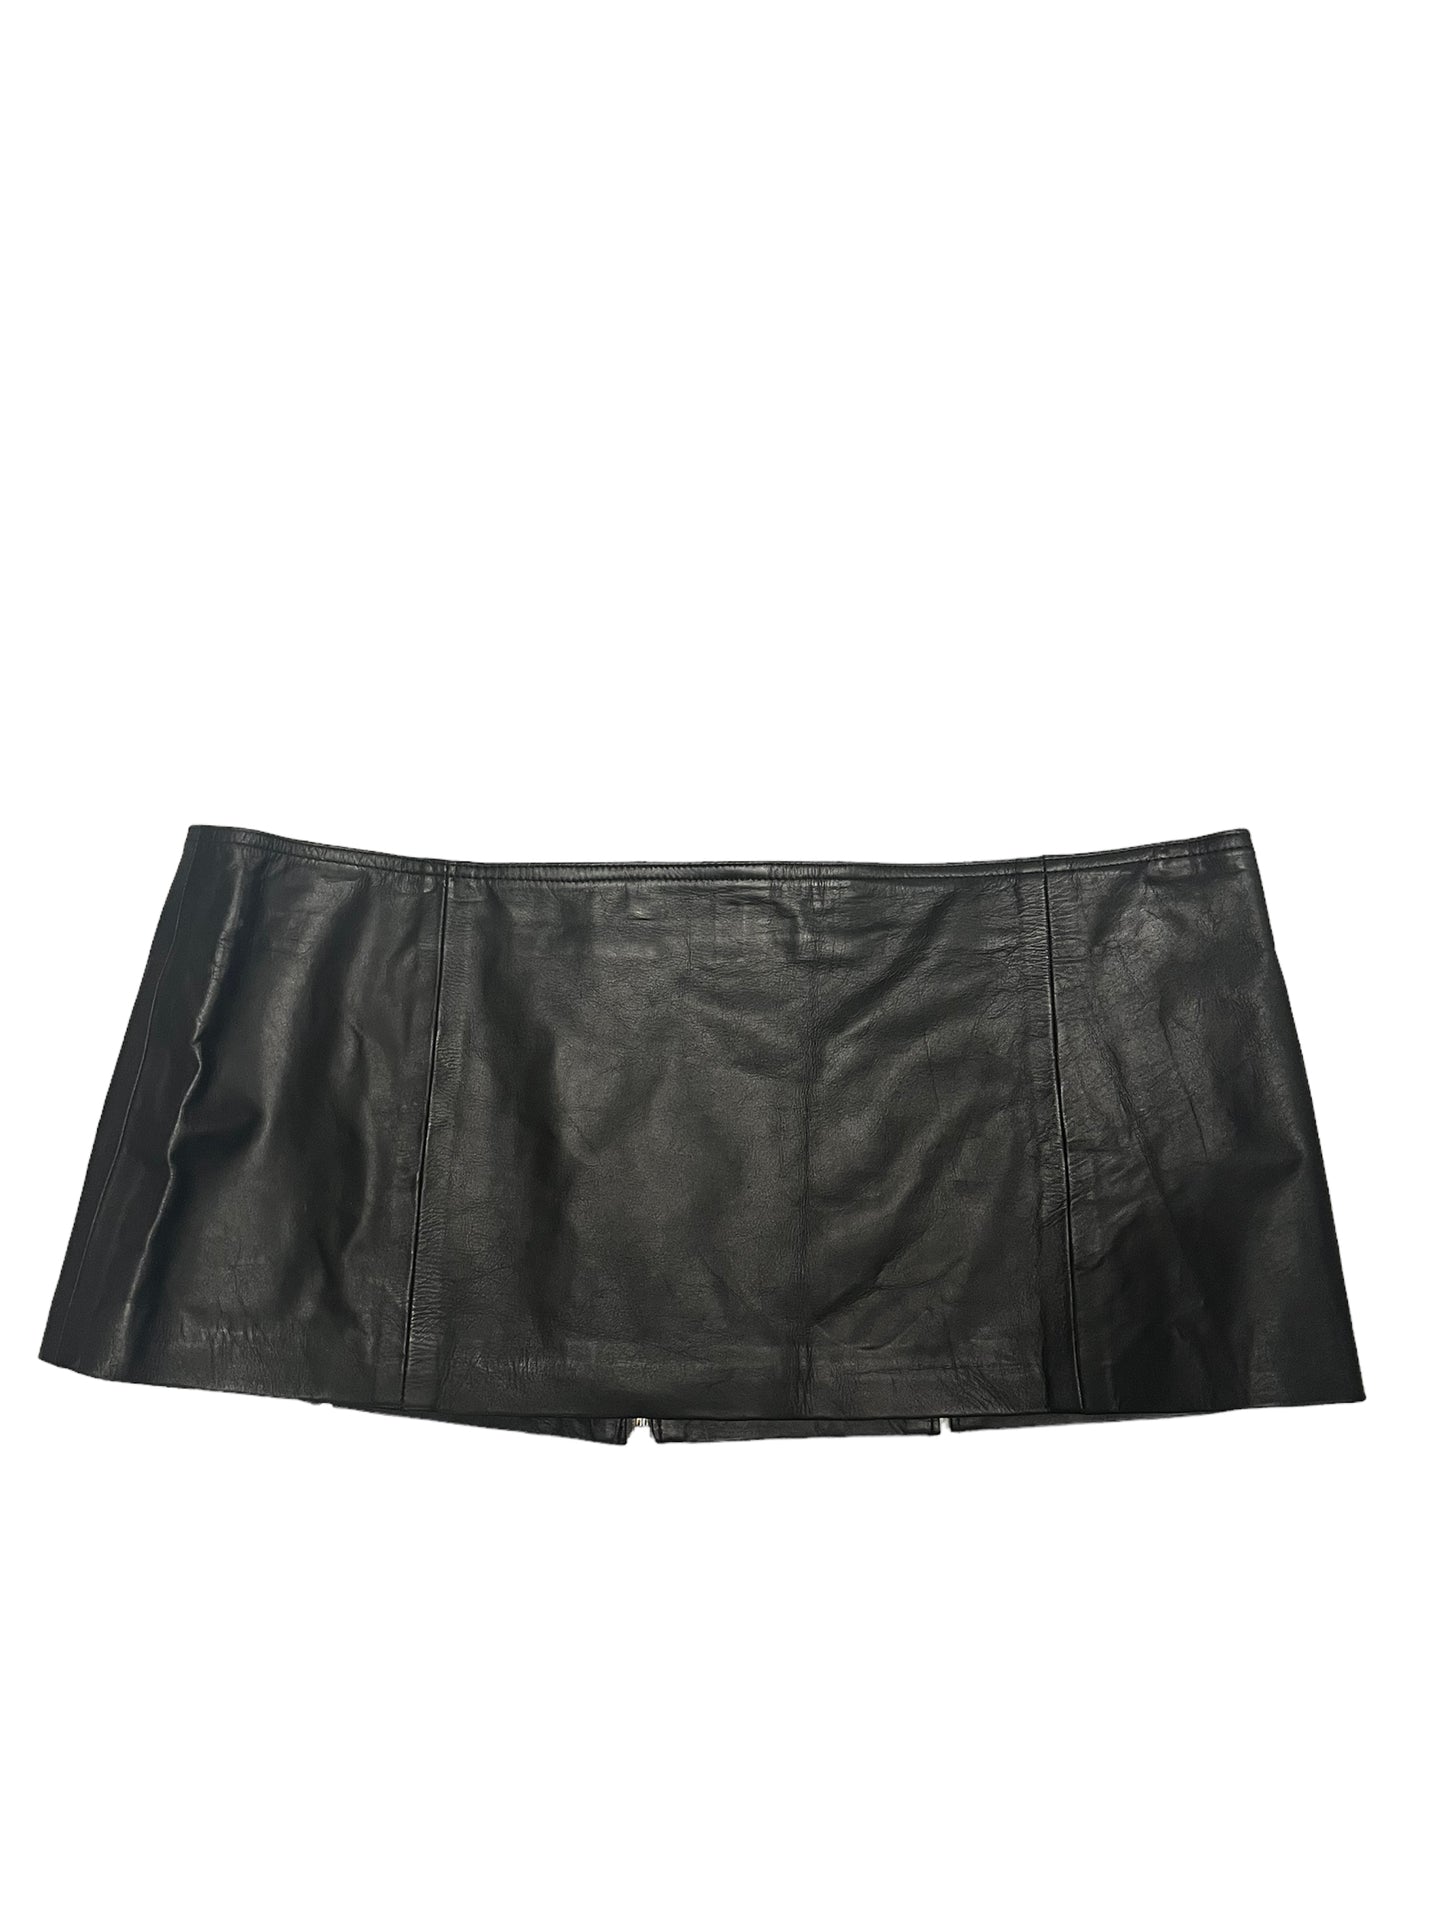 Fashion World - LL45 - Daring Black Short Skirt